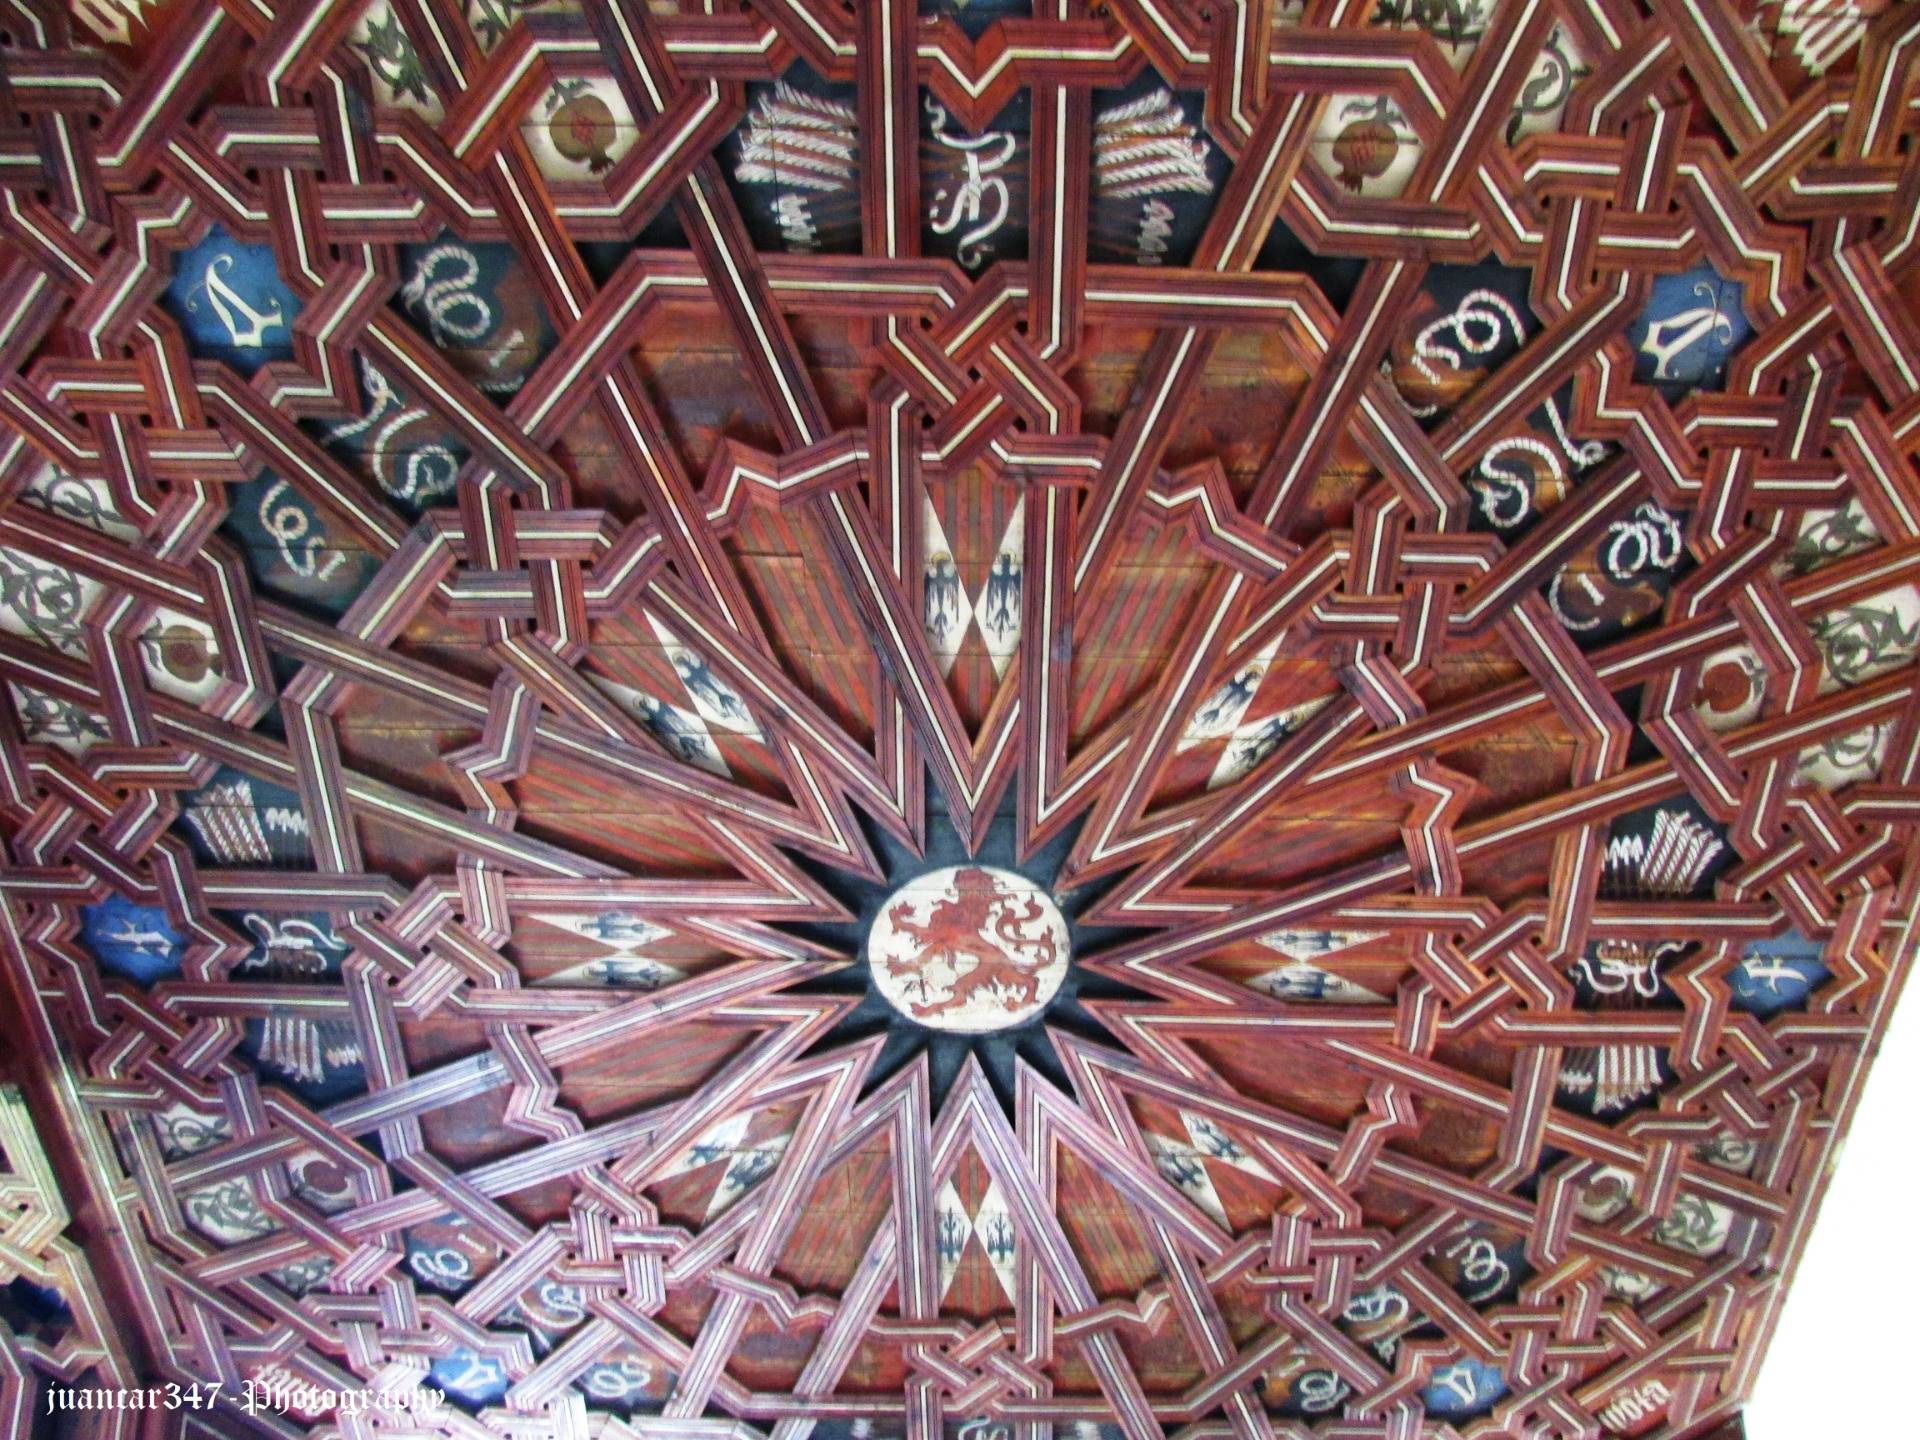 Monastery of San Juan de los Reyes: Mudejar coffered ceiling of the upper floor of the cloister